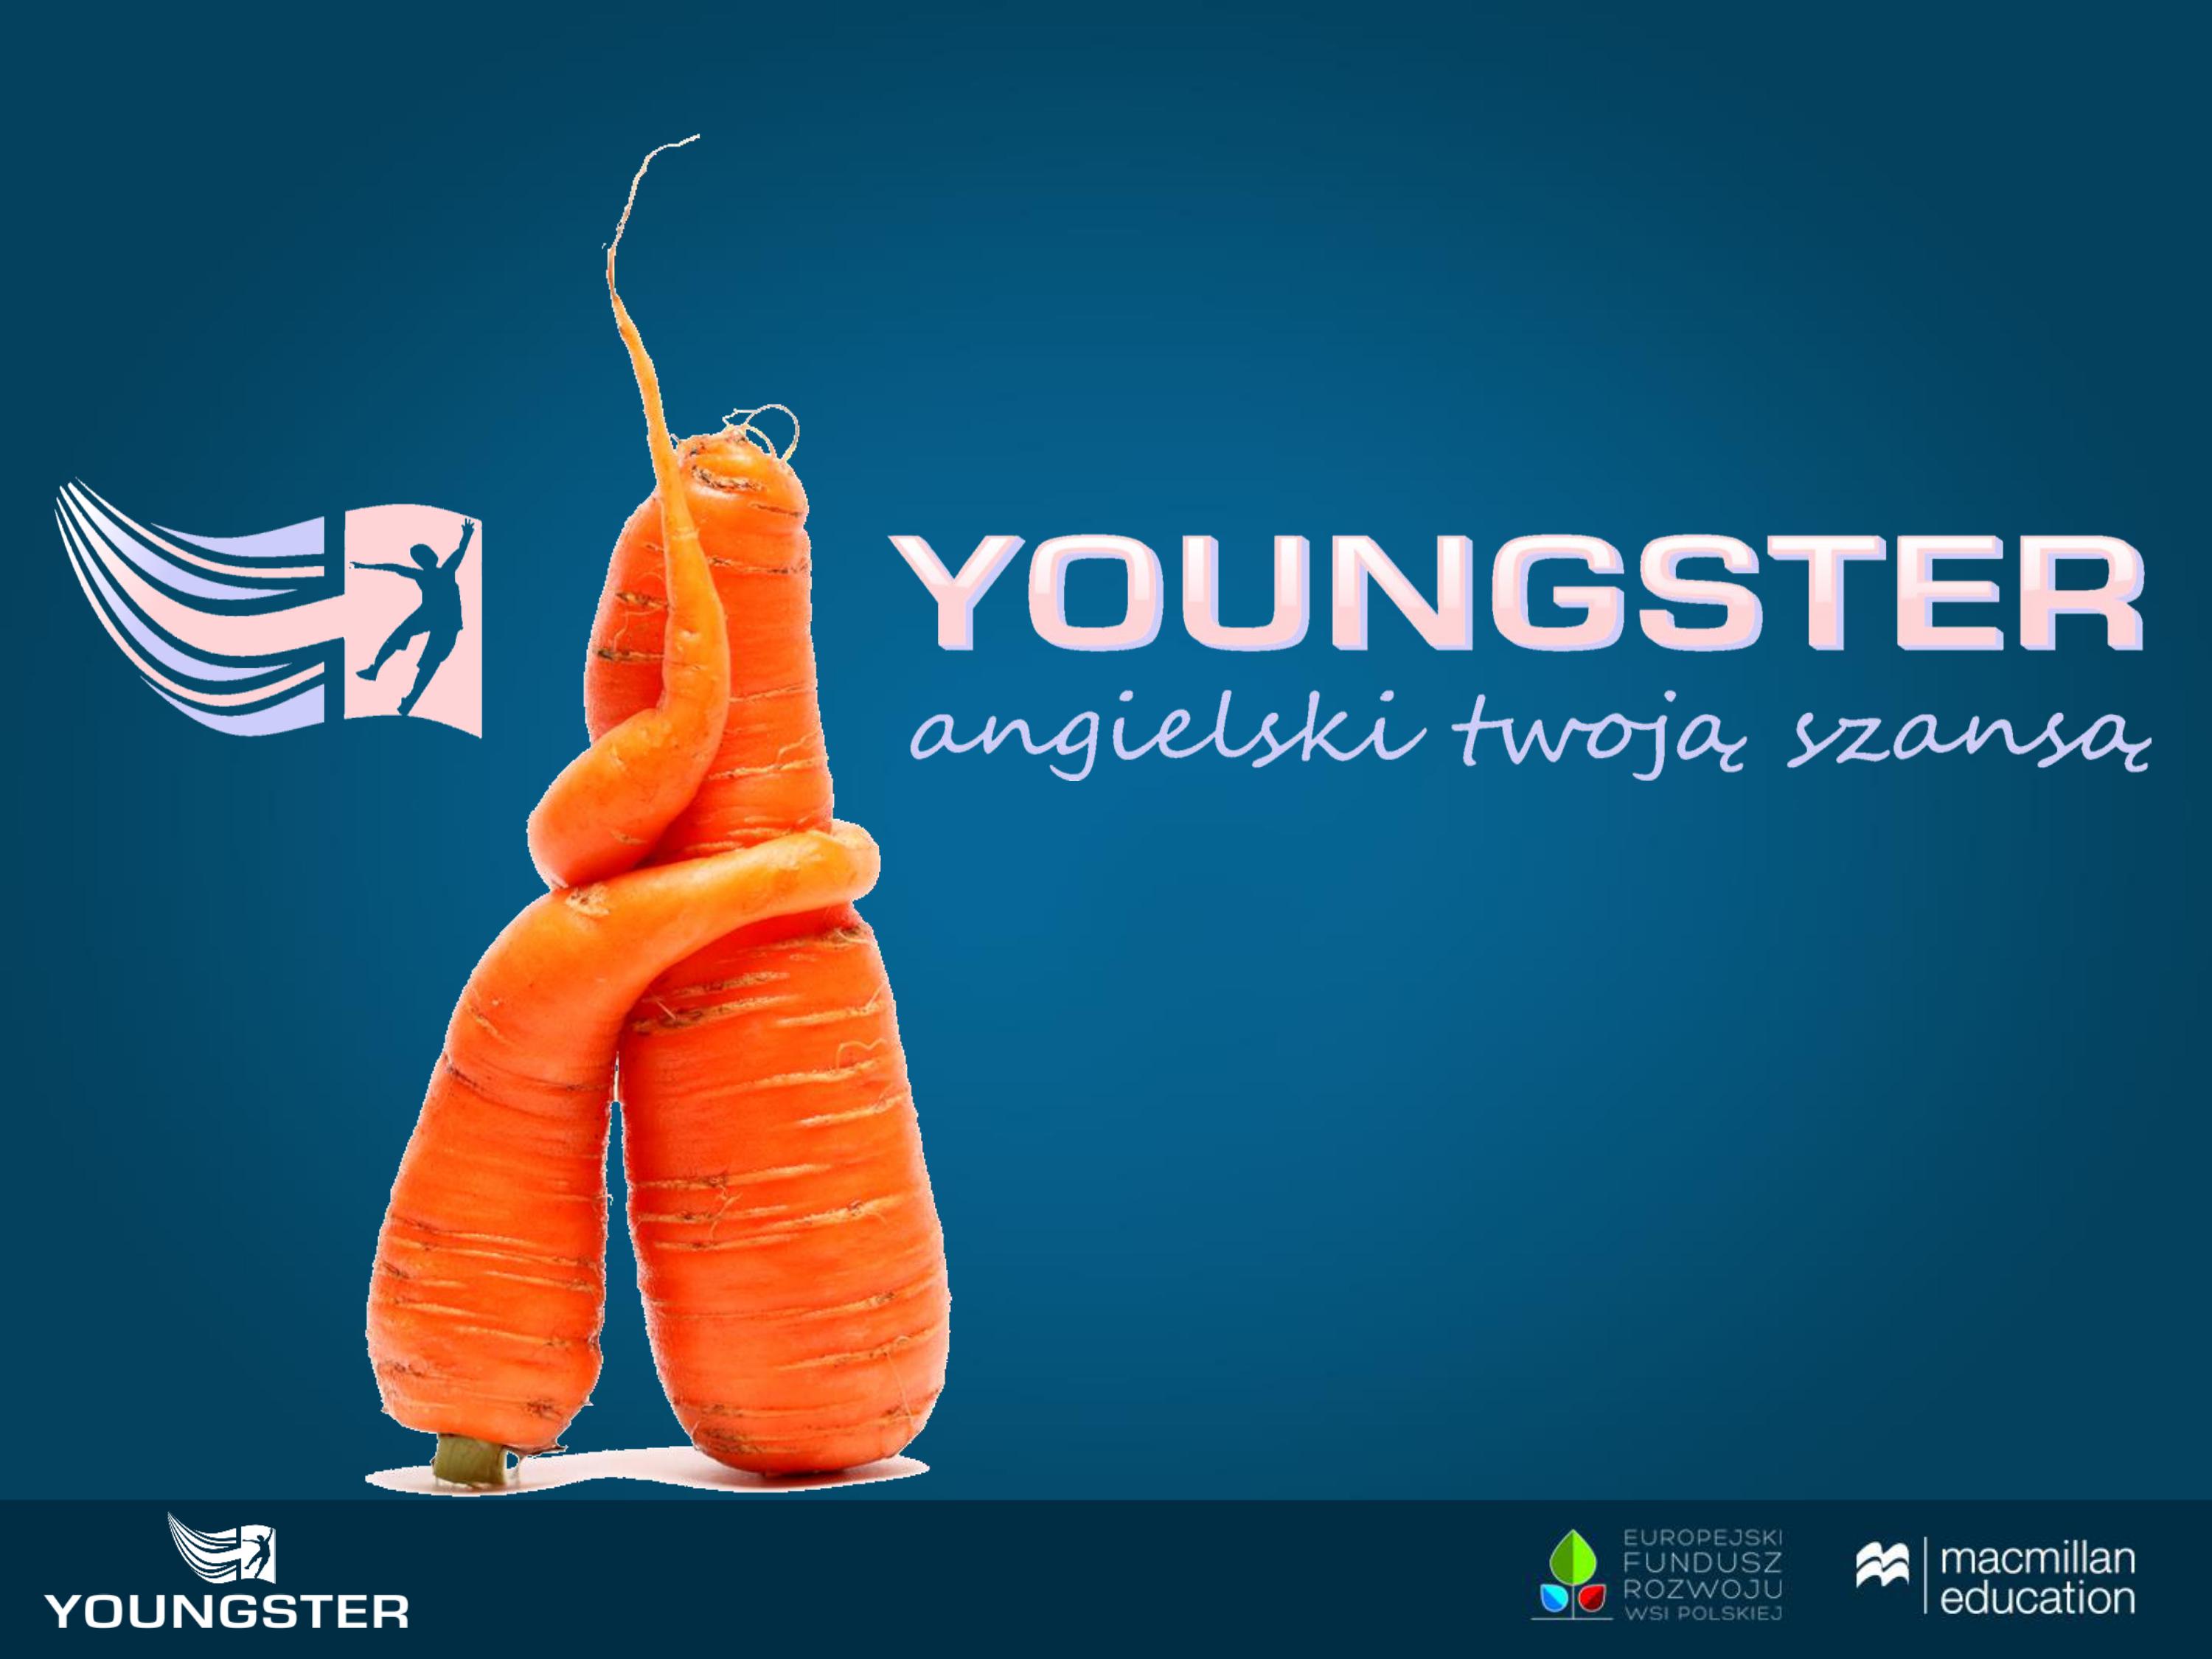 Grupa Projektowa Youngster ze Szkoły Podstawowej w Osieczy nagrodzona.